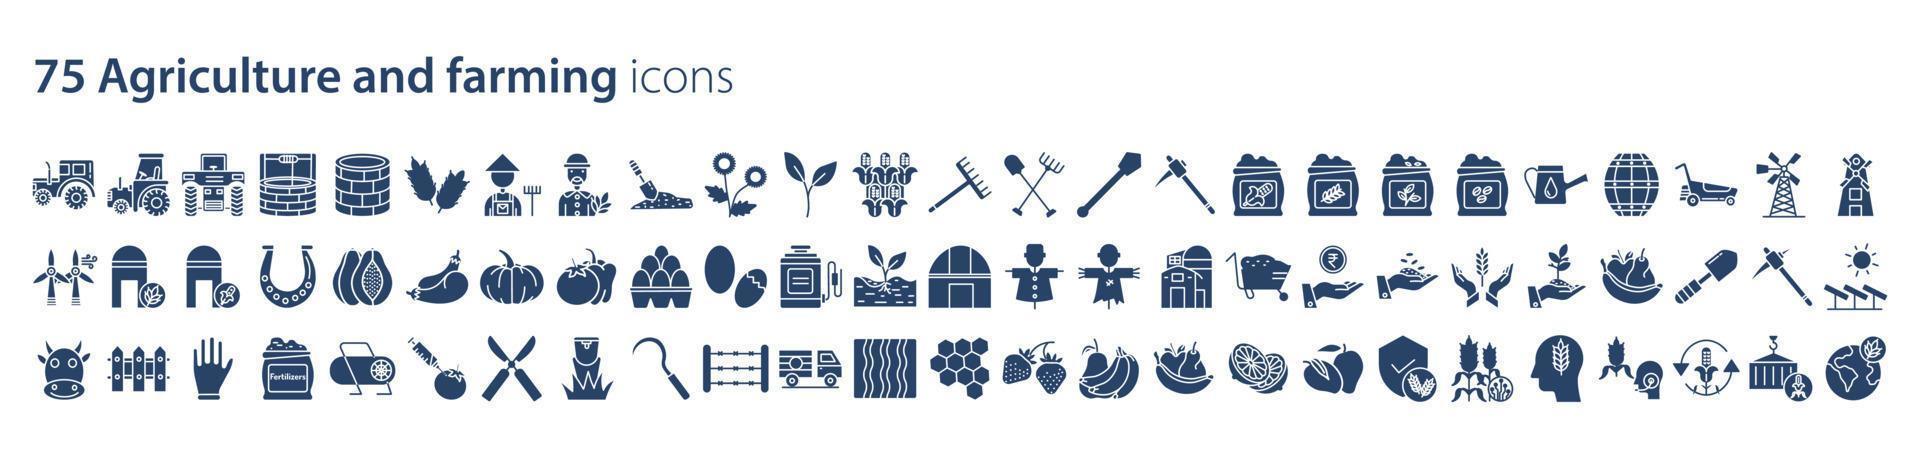 Sammlung von Symbolen im Zusammenhang mit Landwirtschaft und Landwirtschaft, einschließlich Symbolen wie Blatt, Traktor, Lebensmittel, Obst, Garten und mehr. Vektorgrafiken, pixelgenau vektor